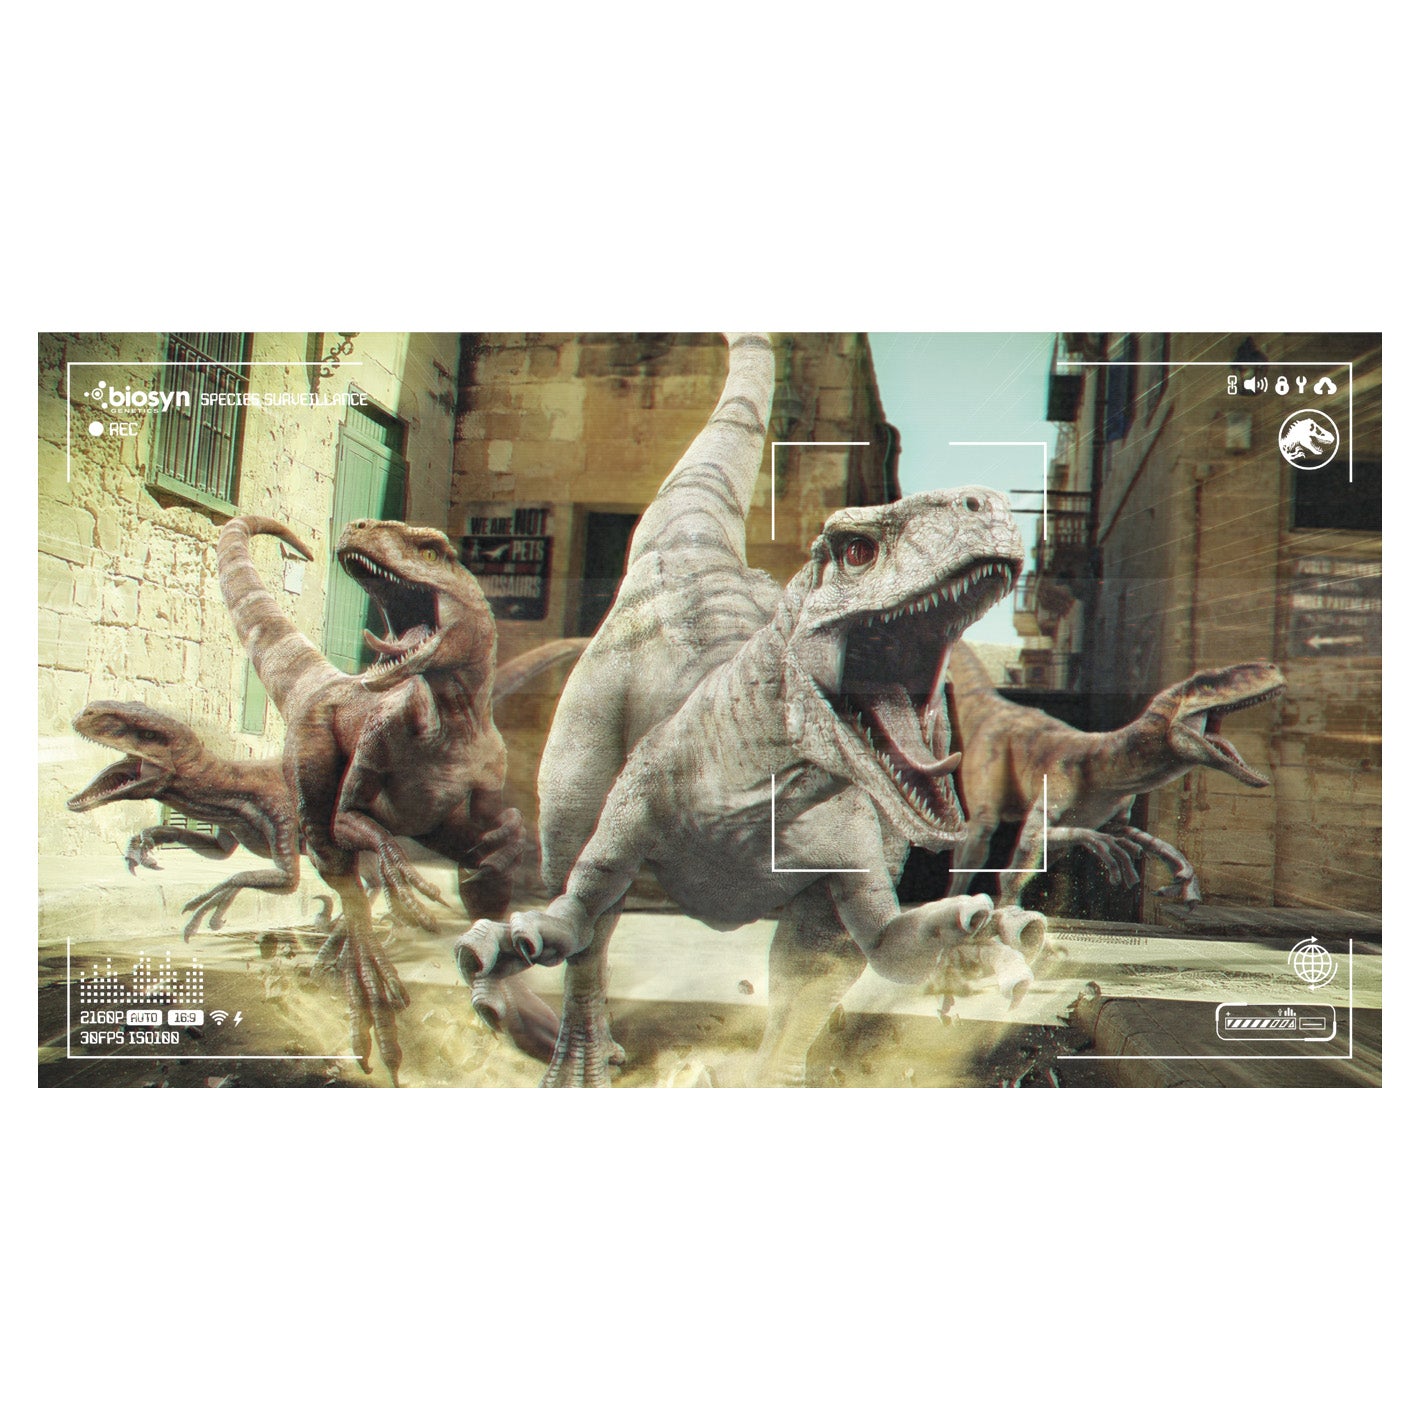 Jurassic World Dominion: - Atrociraptor – Poster Survaillance Fathead Officially